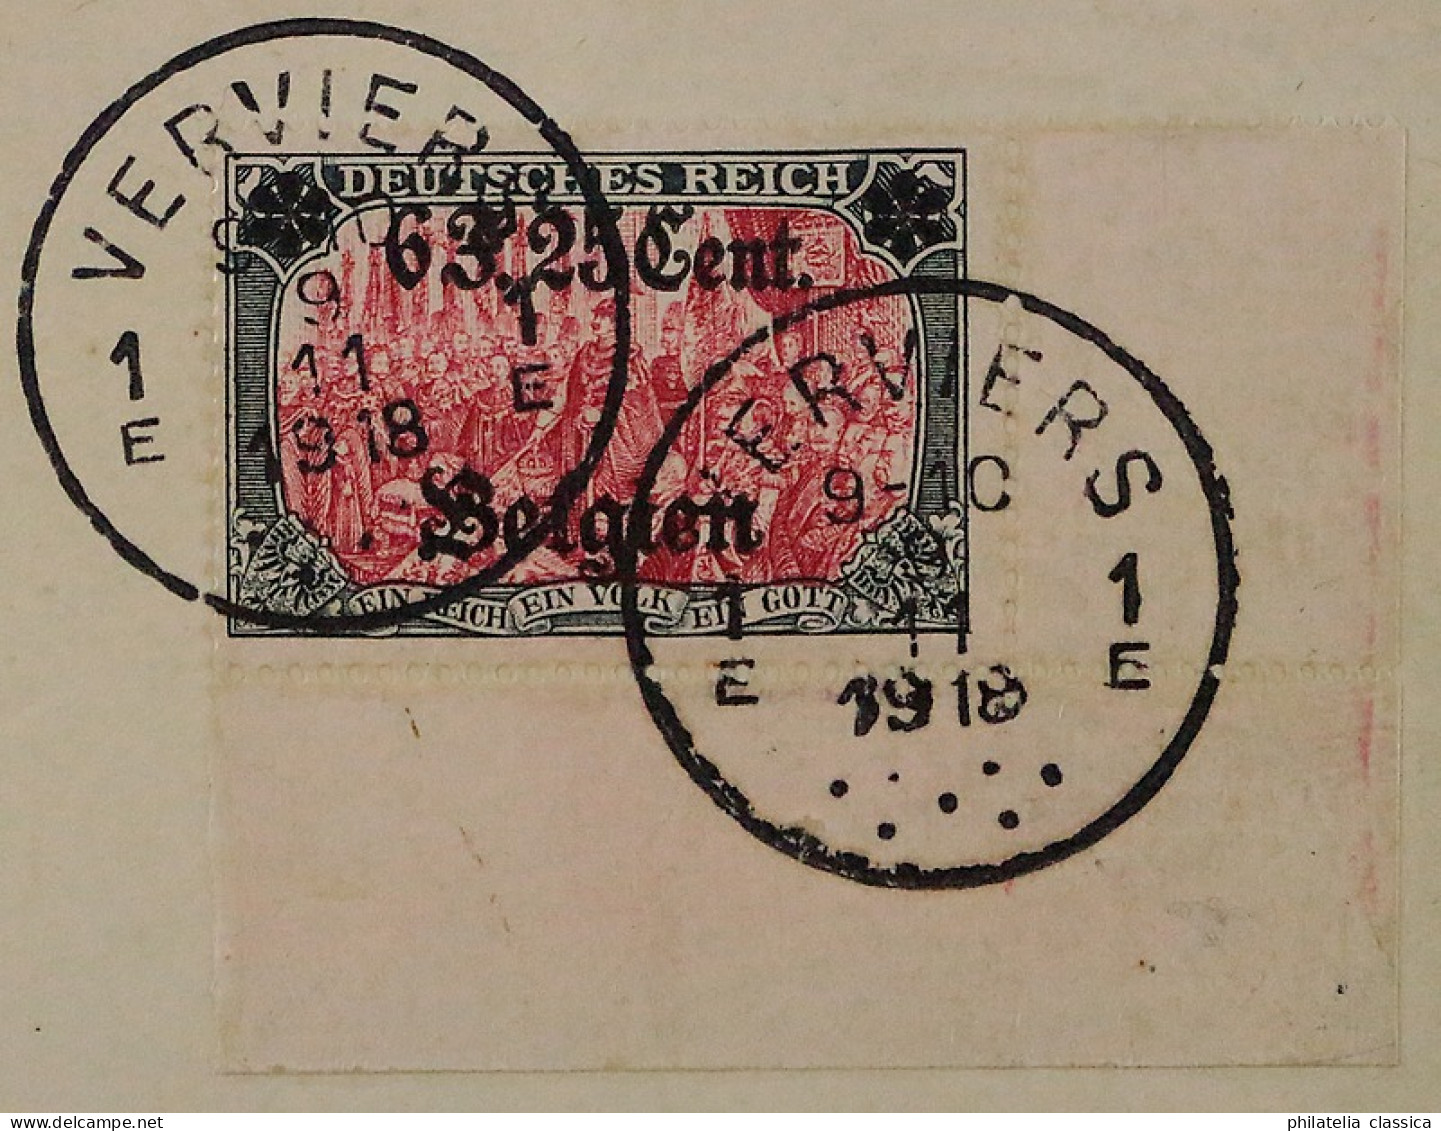 1916, I. Weltkrieg BELGIEN 25 I, Aufdruck 6,25 Fr. Top-Wert Auf R-Brief, 400,-€ - Bezetting 1914-18